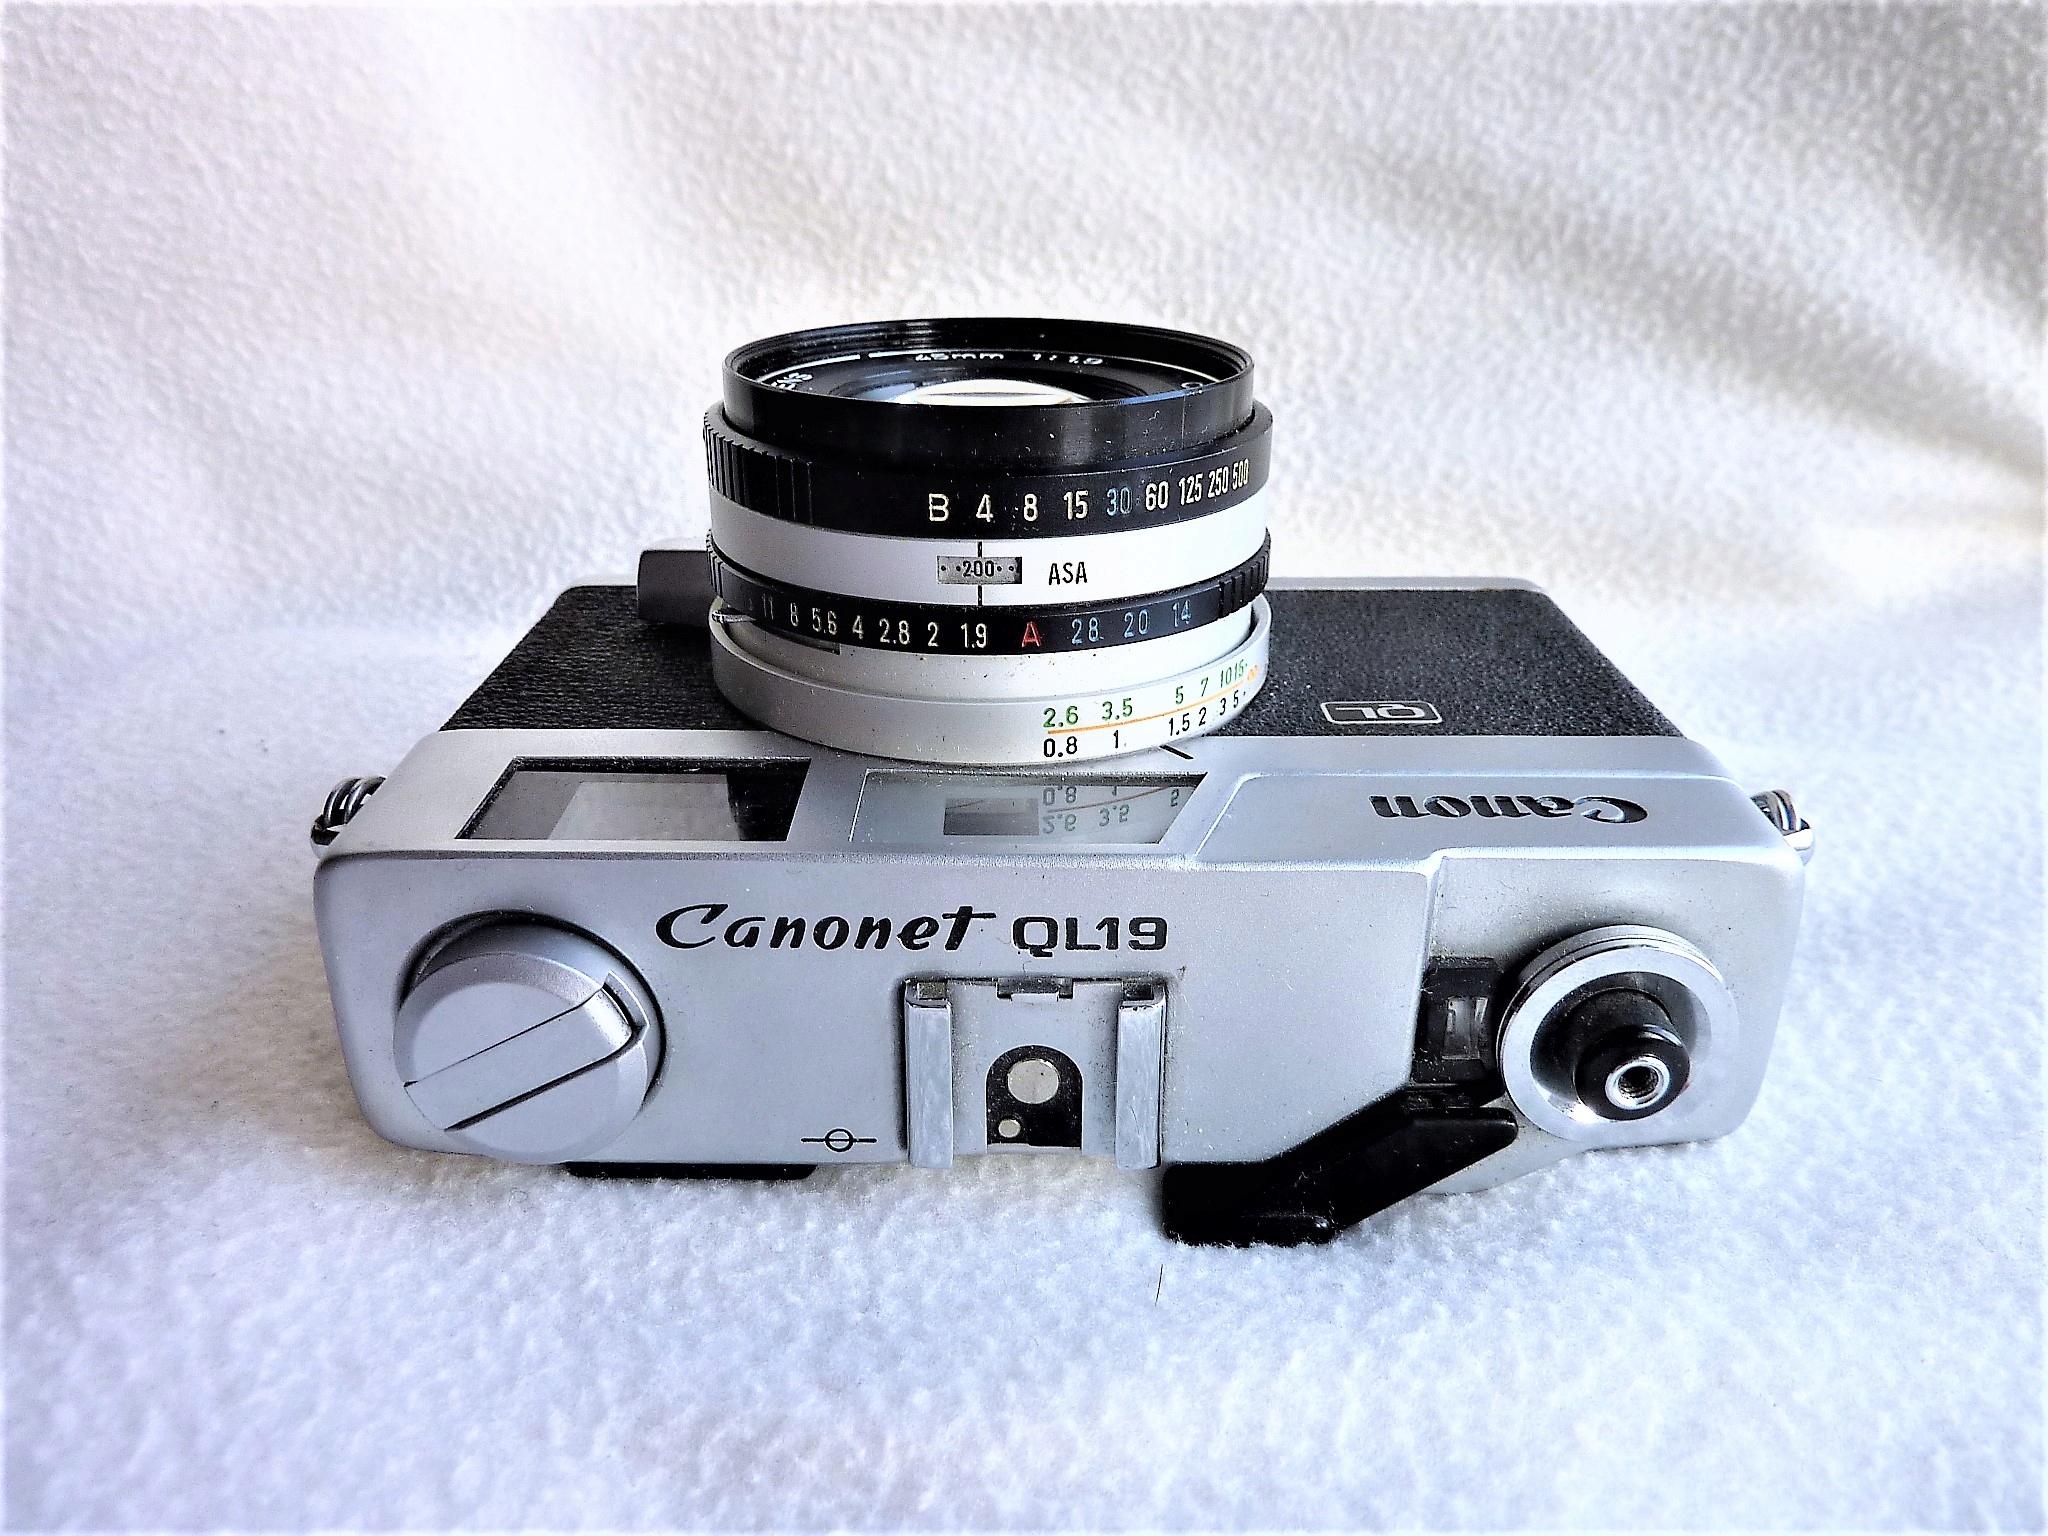 キャノン Canon Canonet Giii QL19+spbgp44.ru